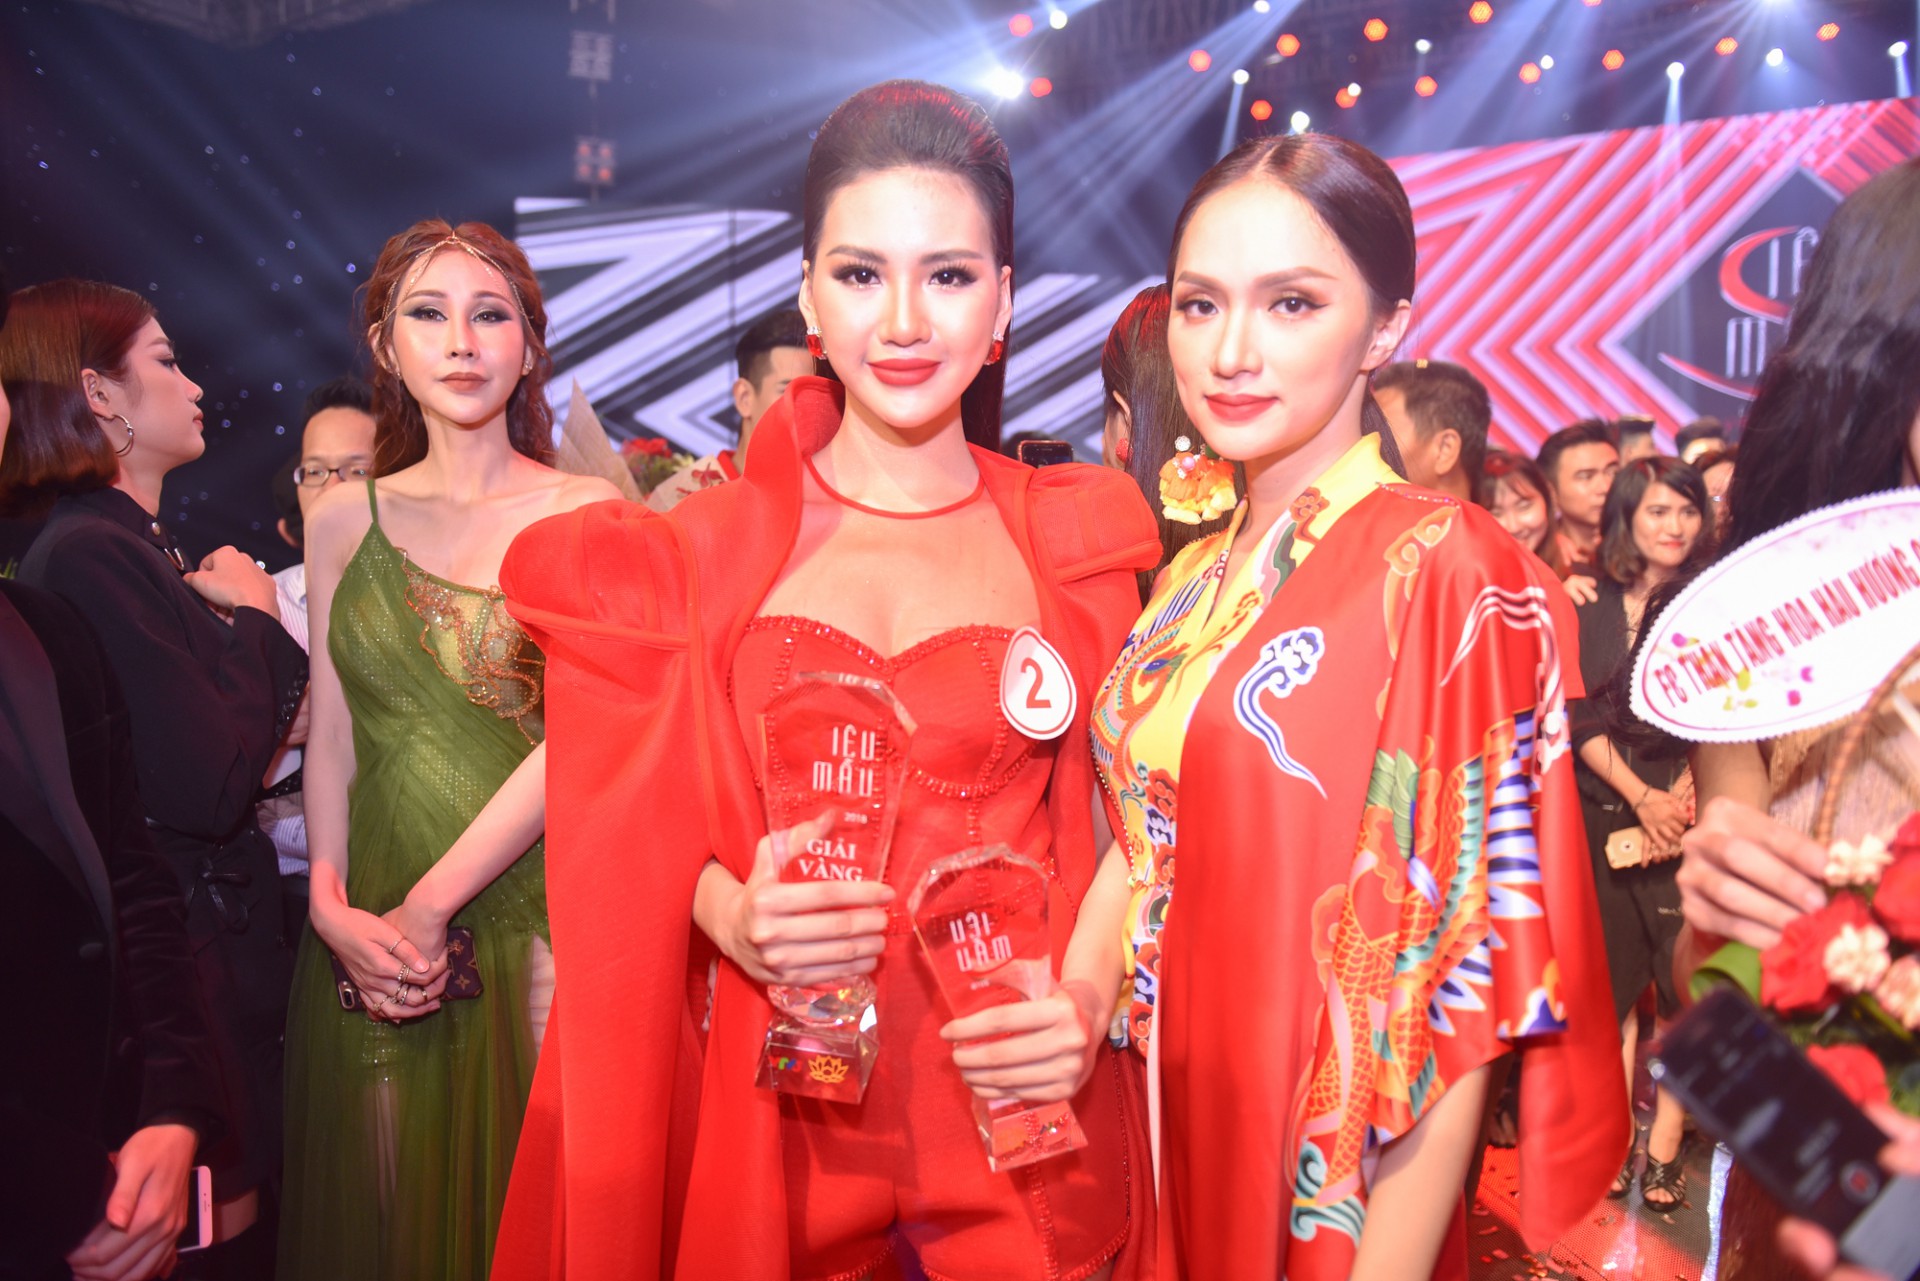 Siêu mẫu Việt Nam 2018: Vóc dáng nóng bỏng, nhiều đại gia theo đuổi - Ảnh 7.